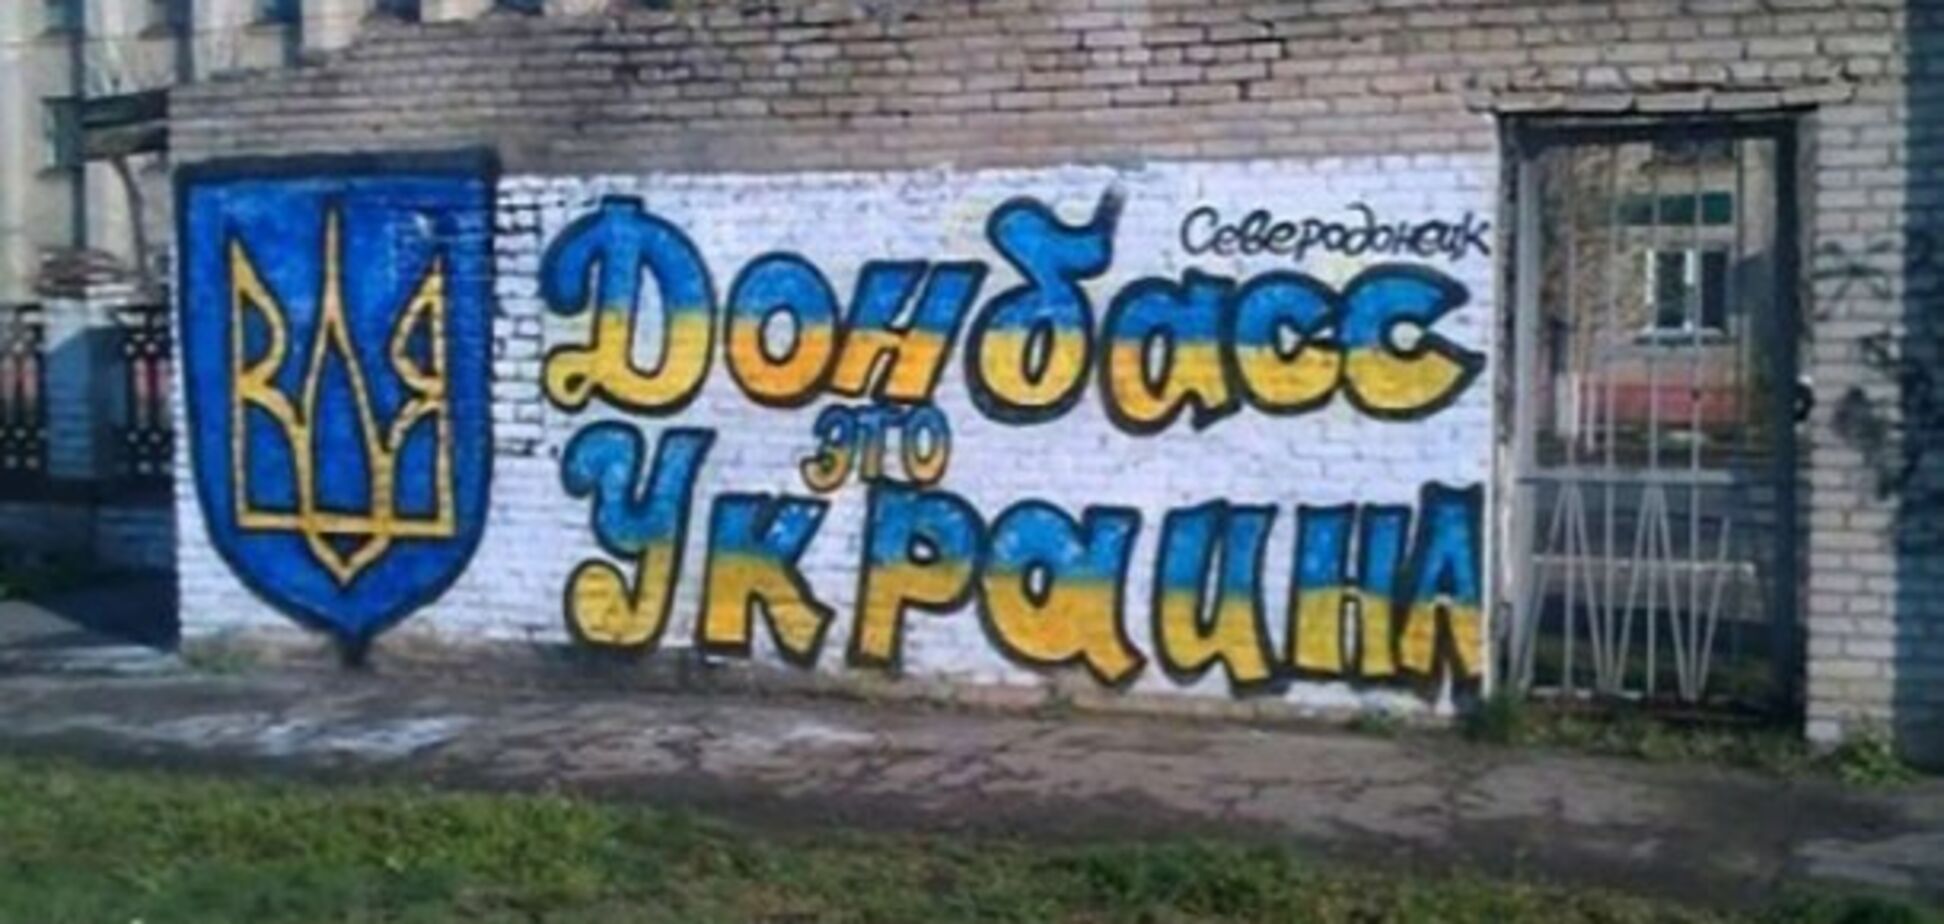 Референдум по Донбассу: позитив на фоне глупых заявлений